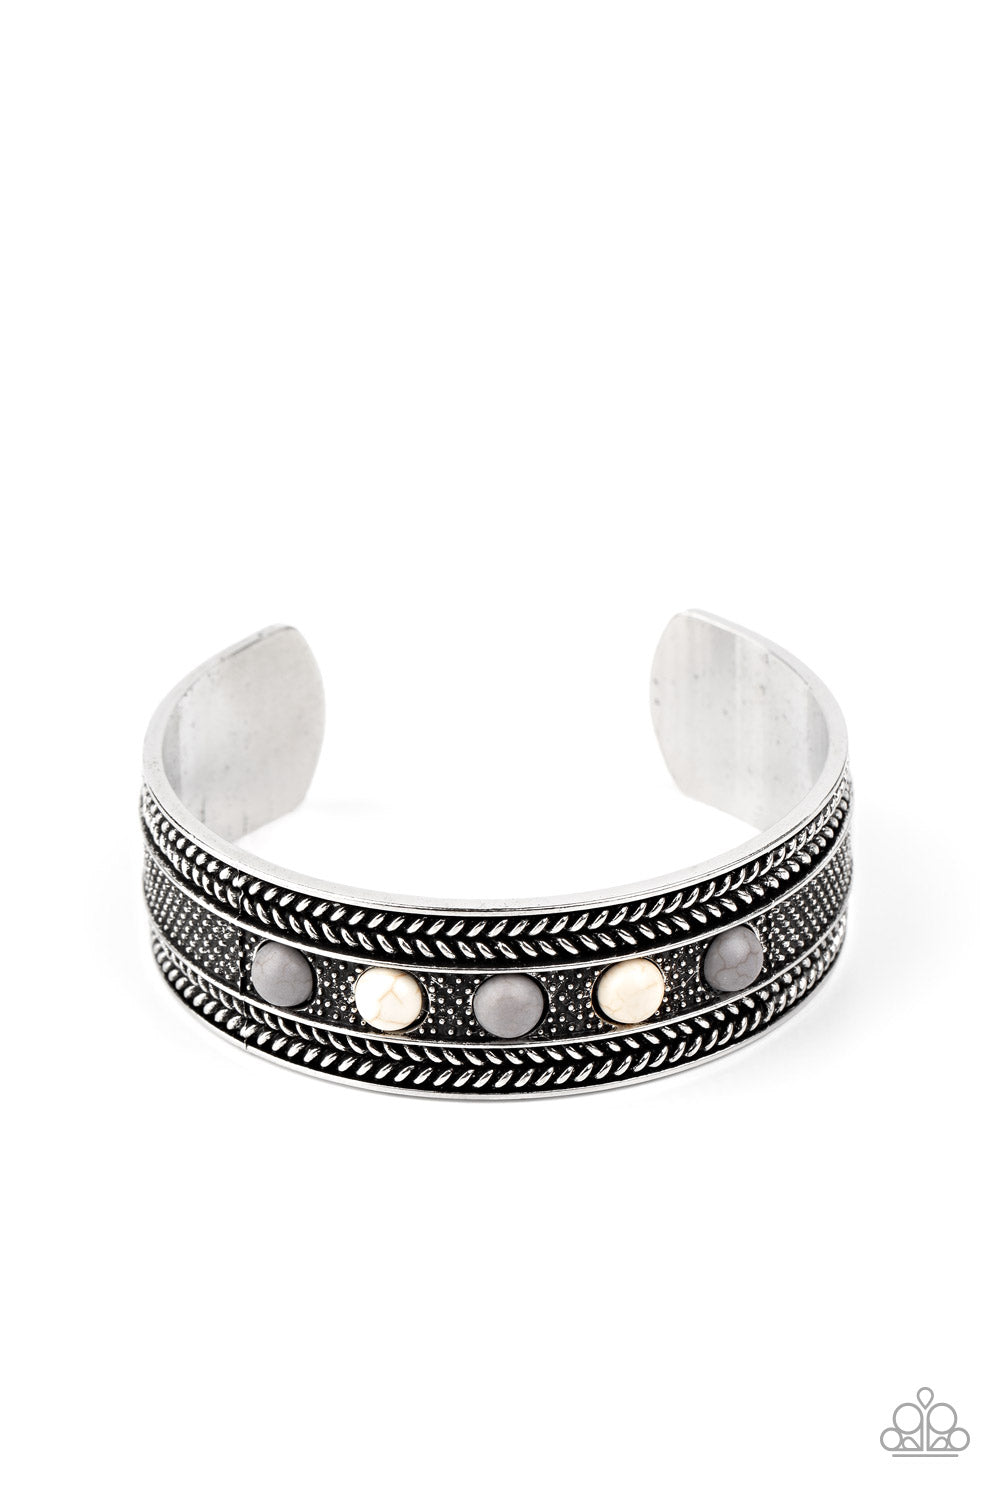 Quarry Quake - Silver cuff bracelet